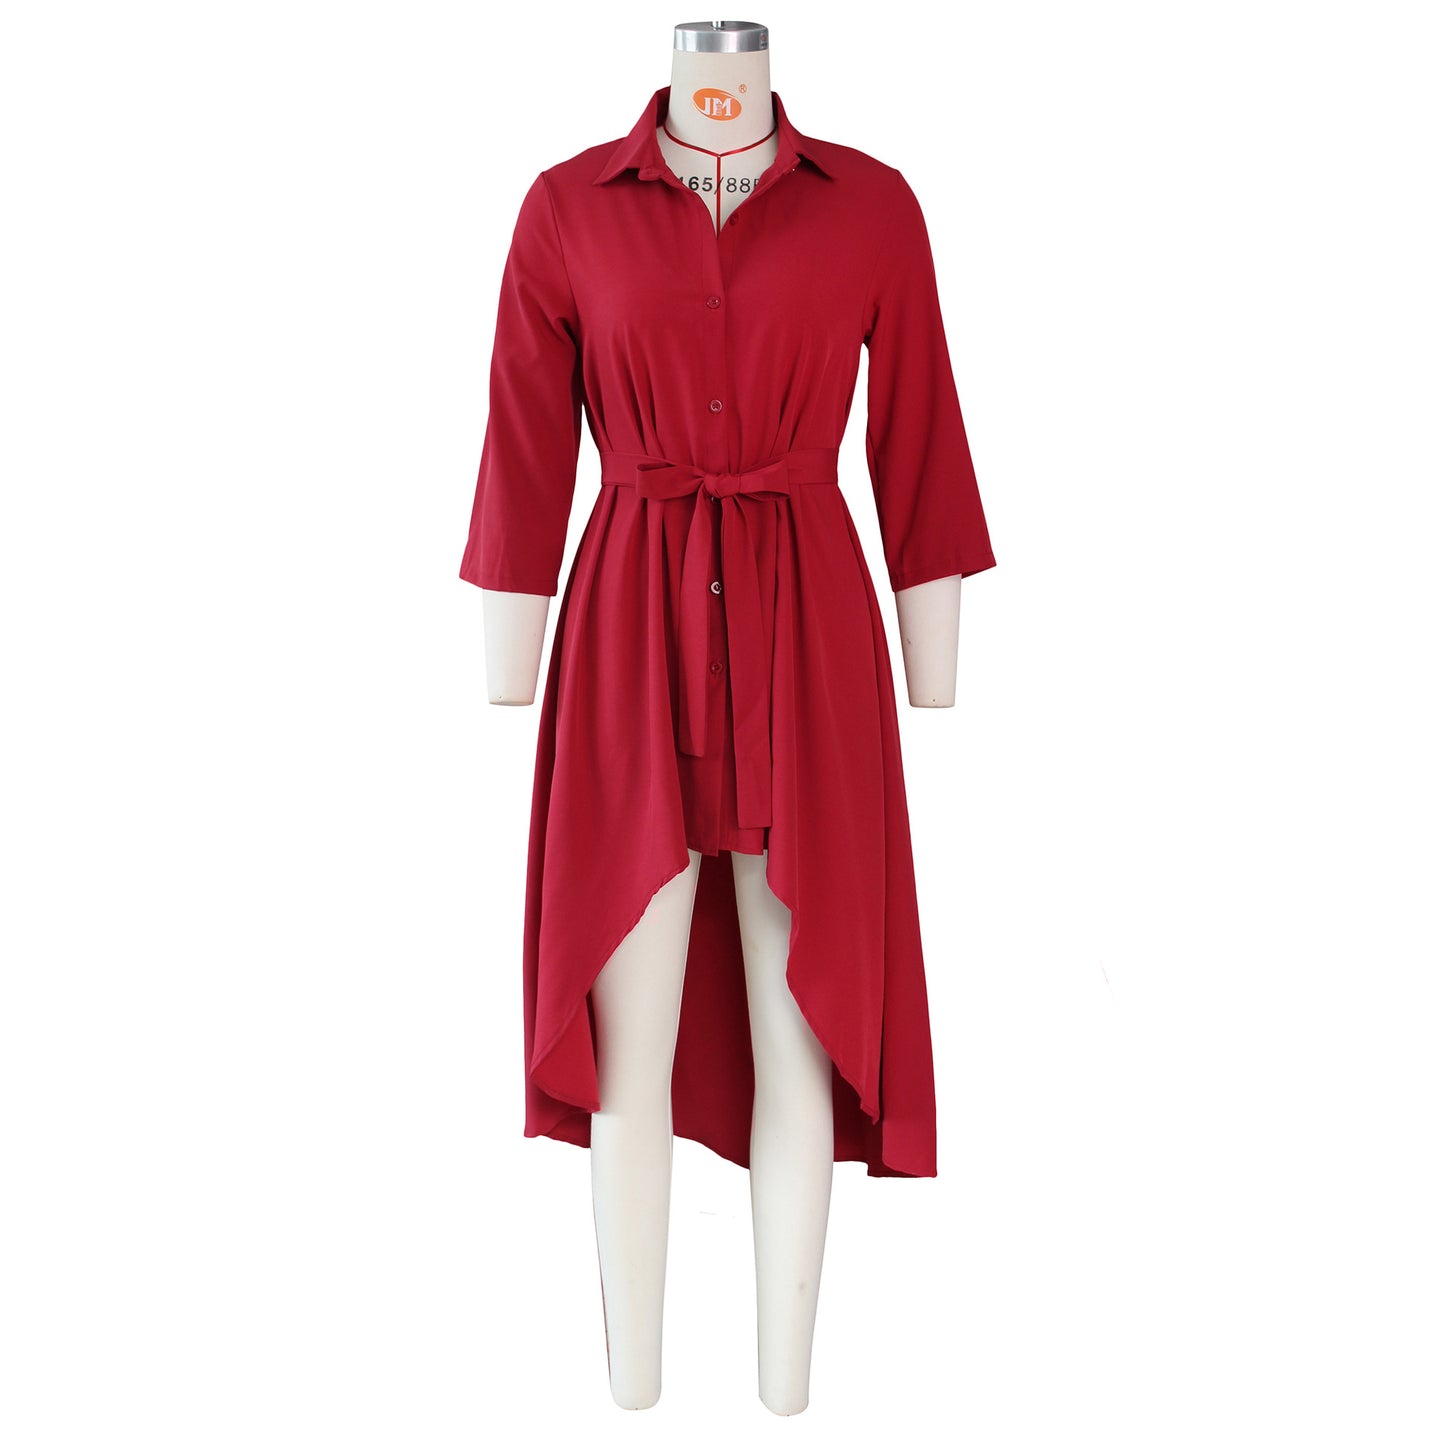 Autumn Winter Irregular Asymmetric Half Sleeve Long Shirt Dress